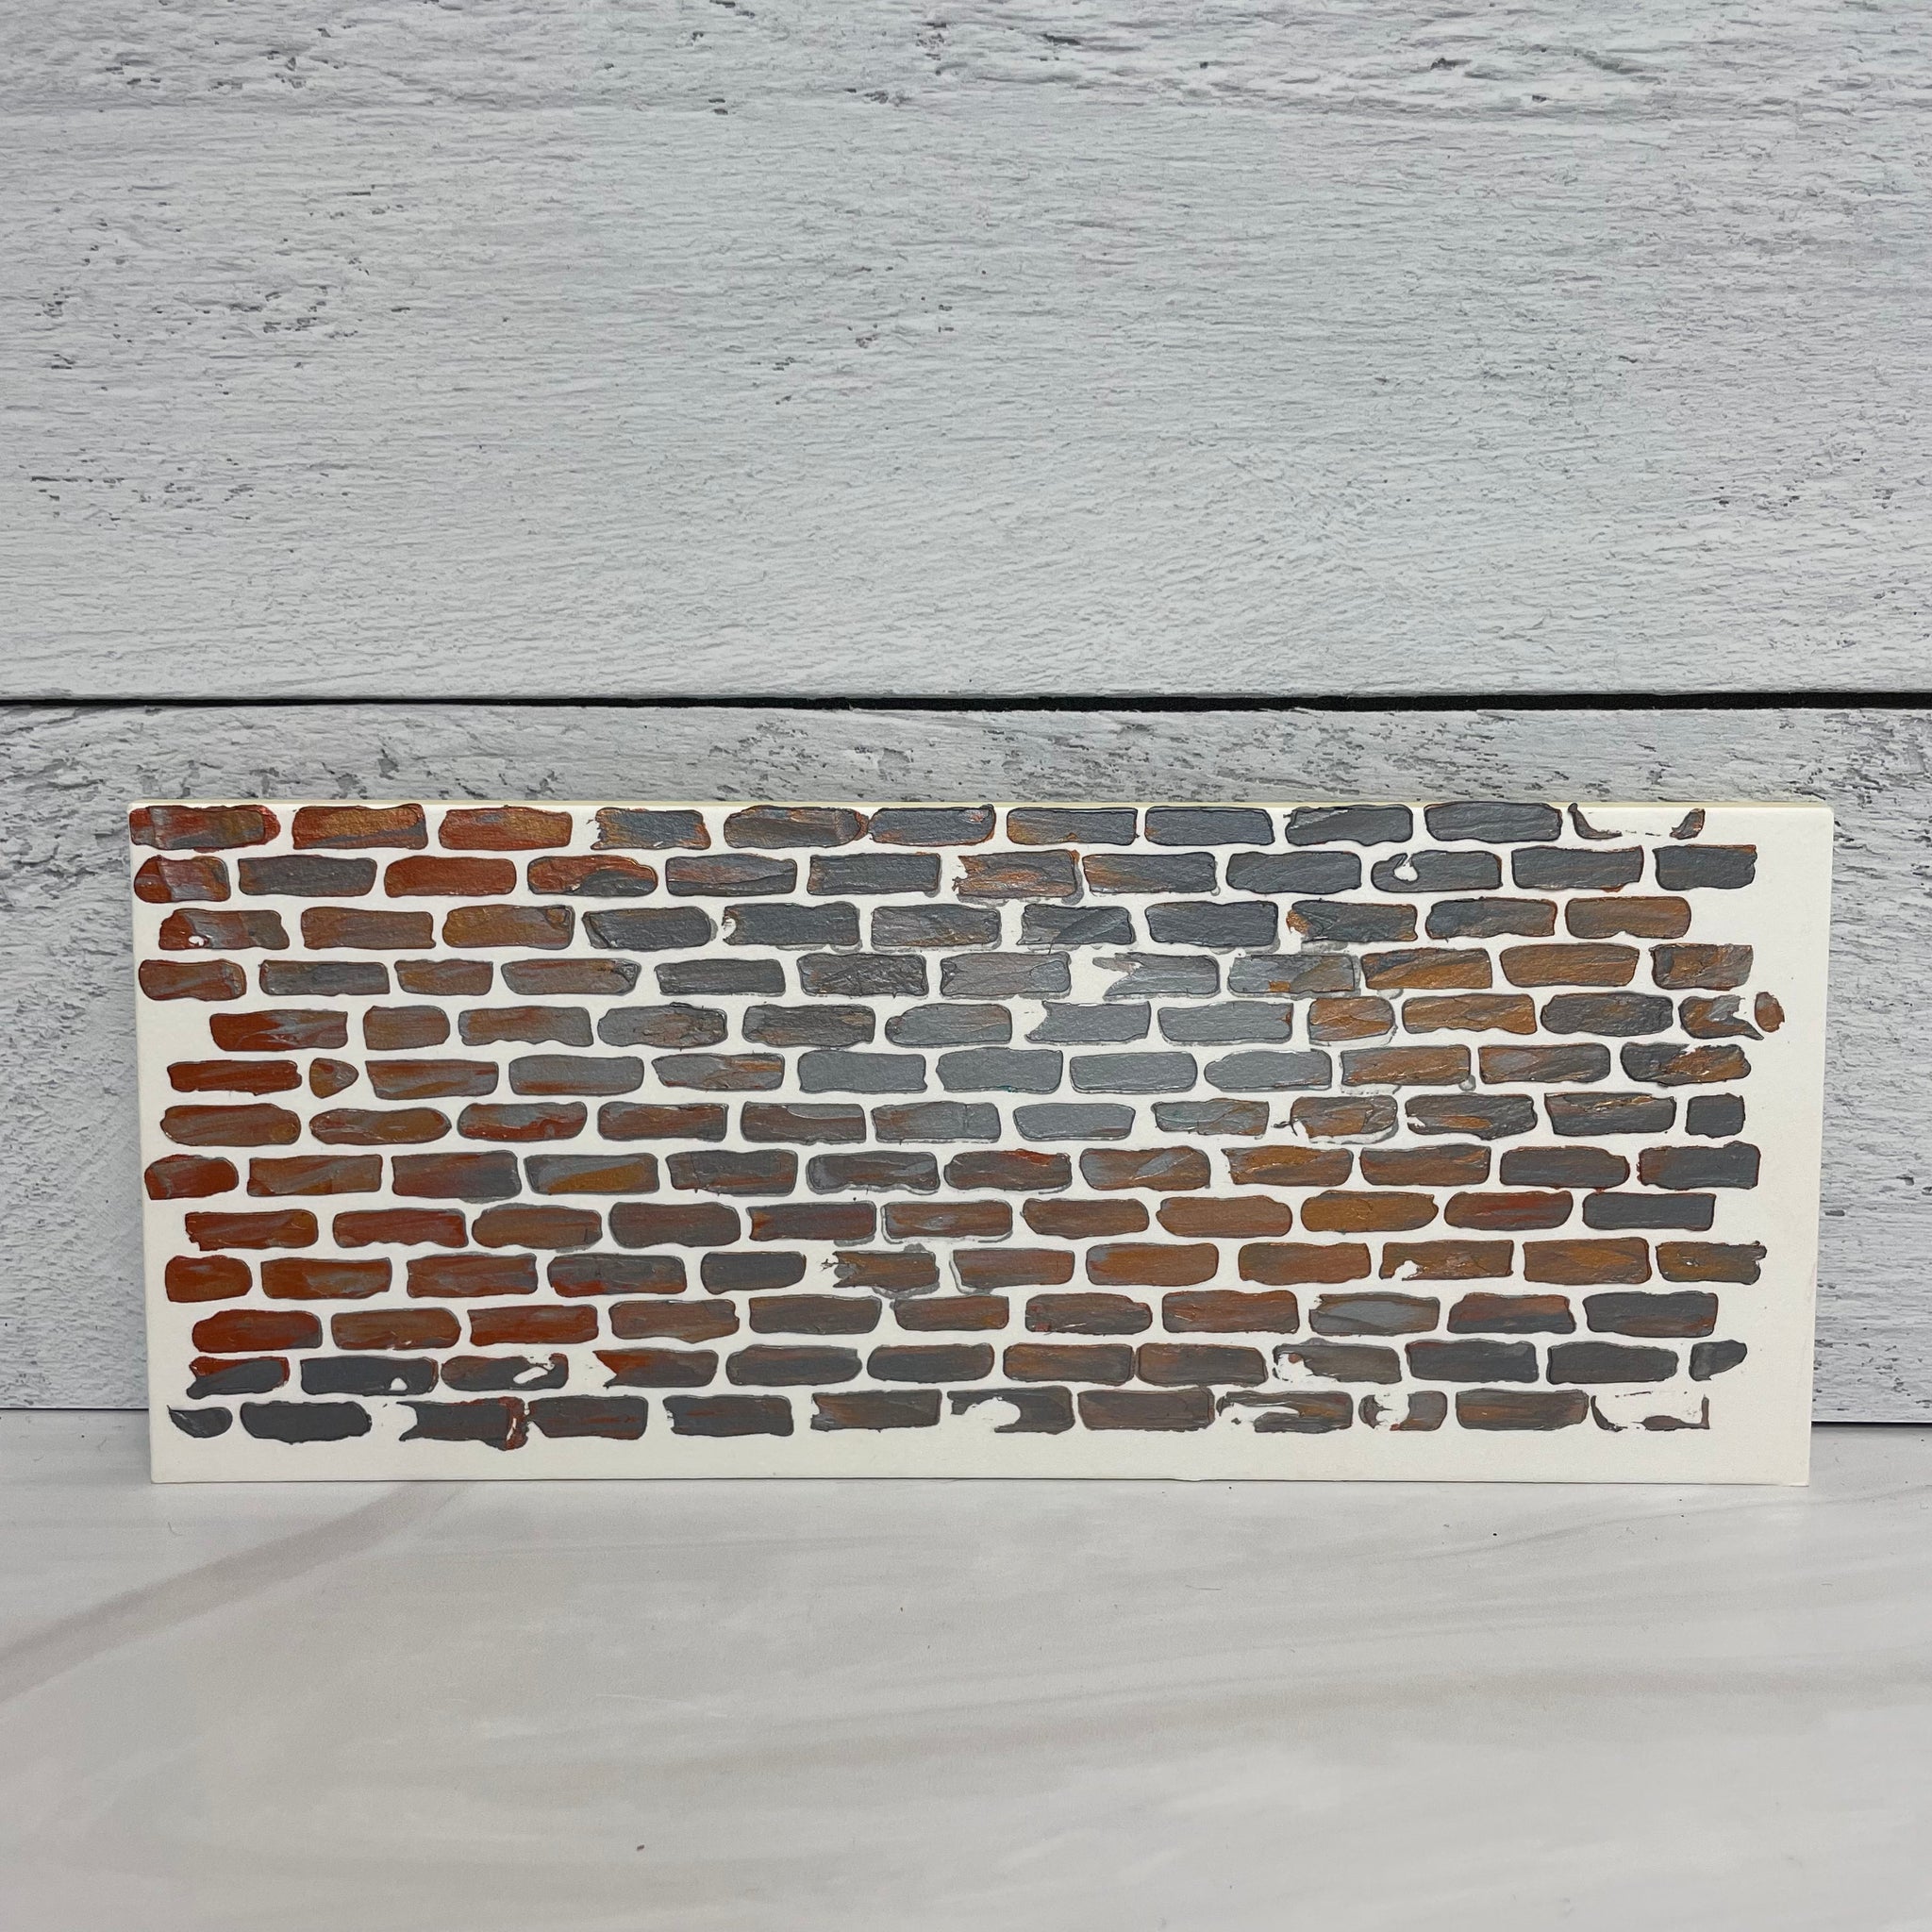 Small Brick Wall Stencil